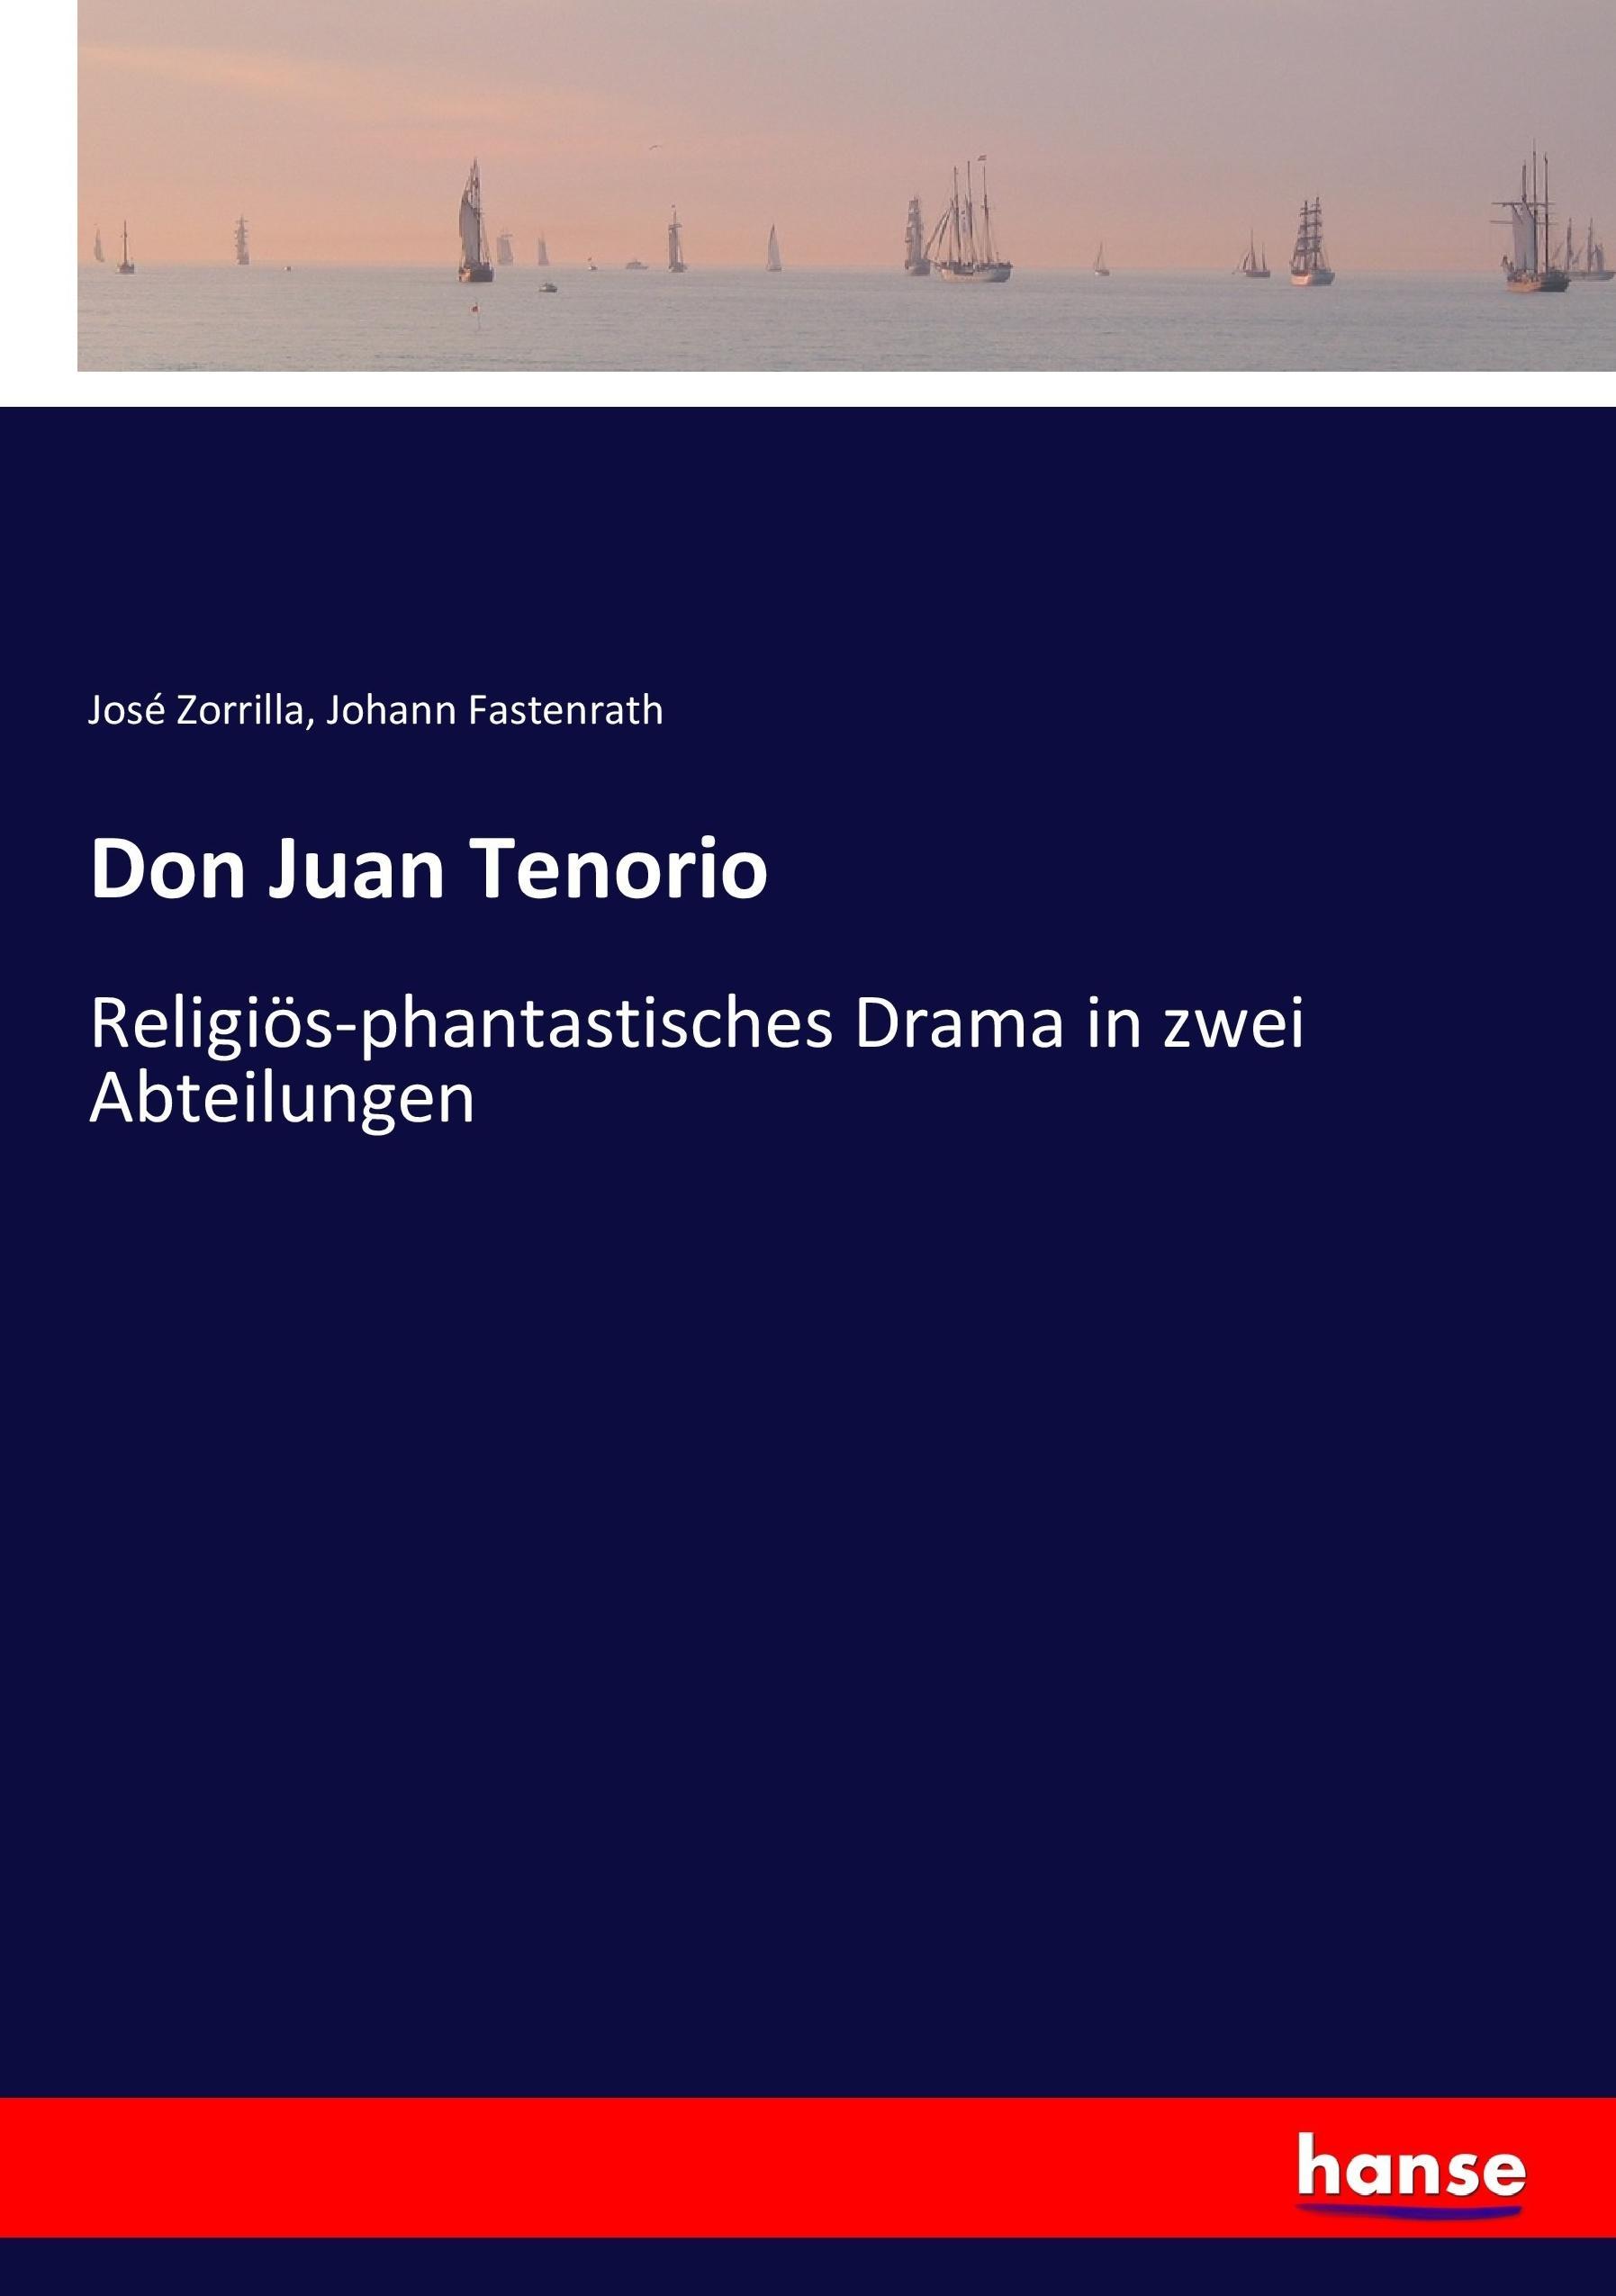 Don Juan Tenorio - Zorrilla, José Fastenrath, Johann